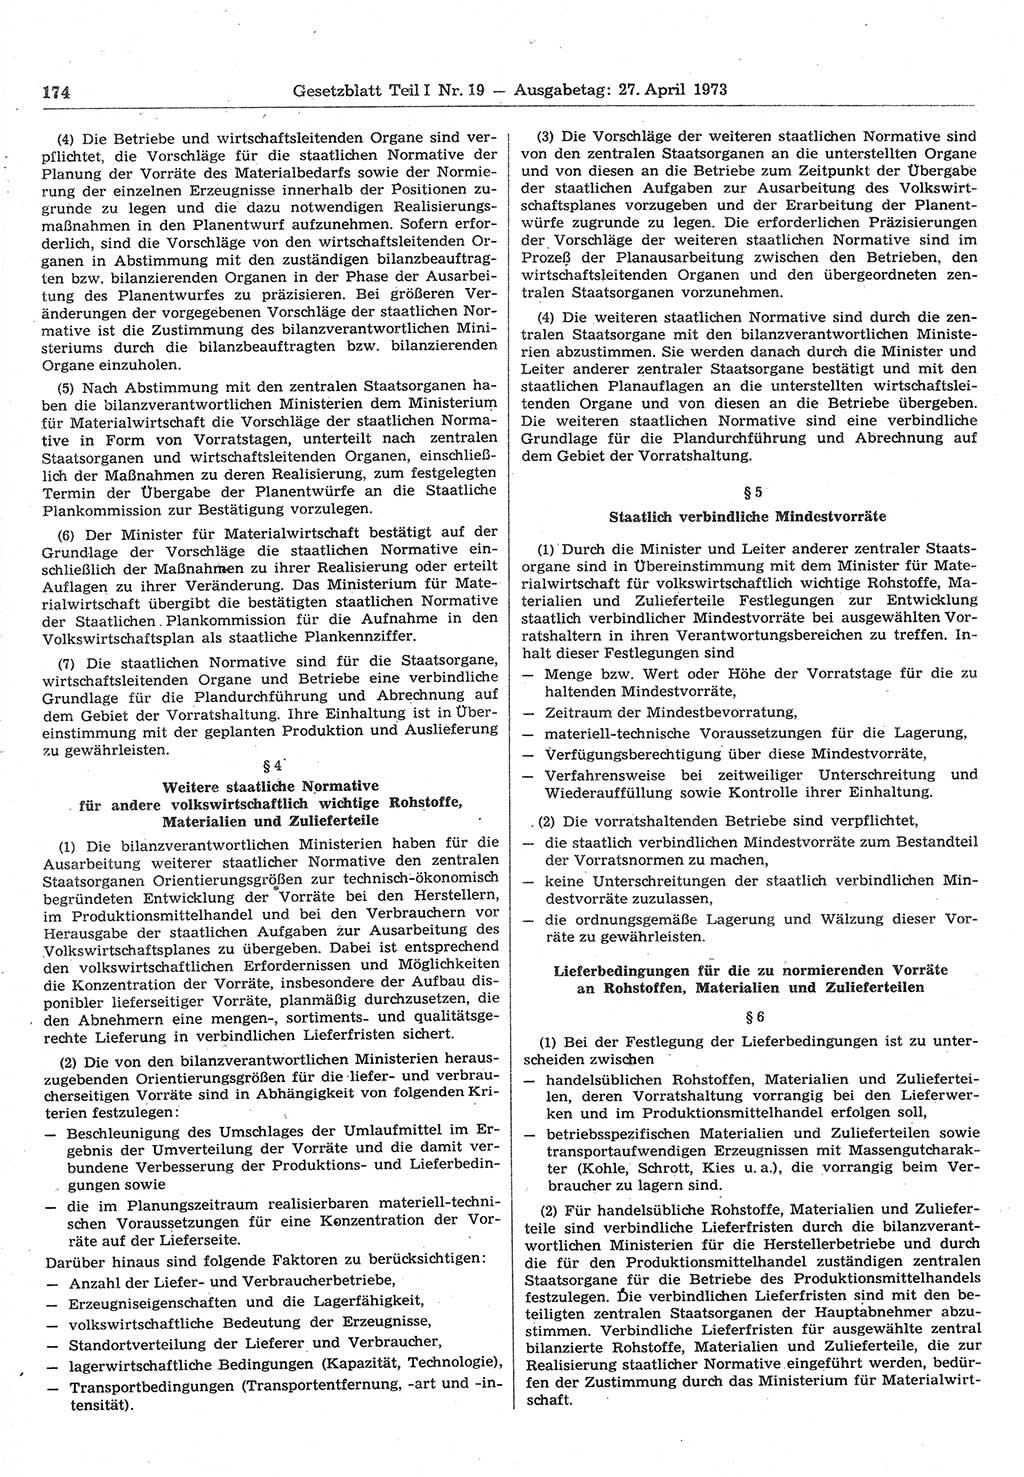 Gesetzblatt (GBl.) der Deutschen Demokratischen Republik (DDR) Teil Ⅰ 1973, Seite 174 (GBl. DDR Ⅰ 1973, S. 174)